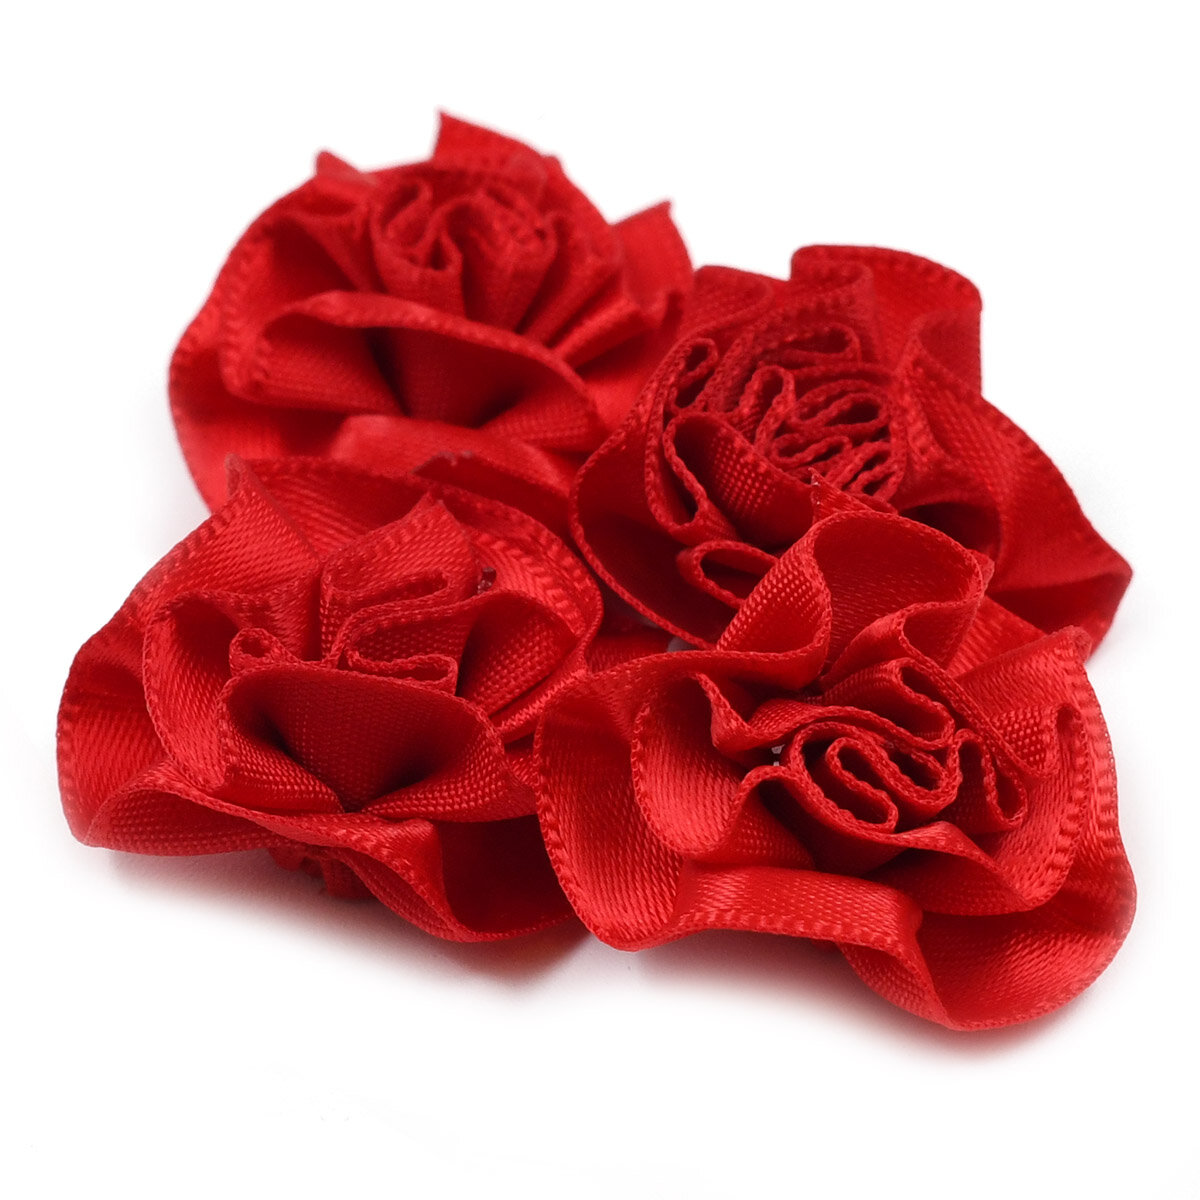 JY100028 Цветы текстильные декоративные, 2,5см. 4шт. (250 красный)